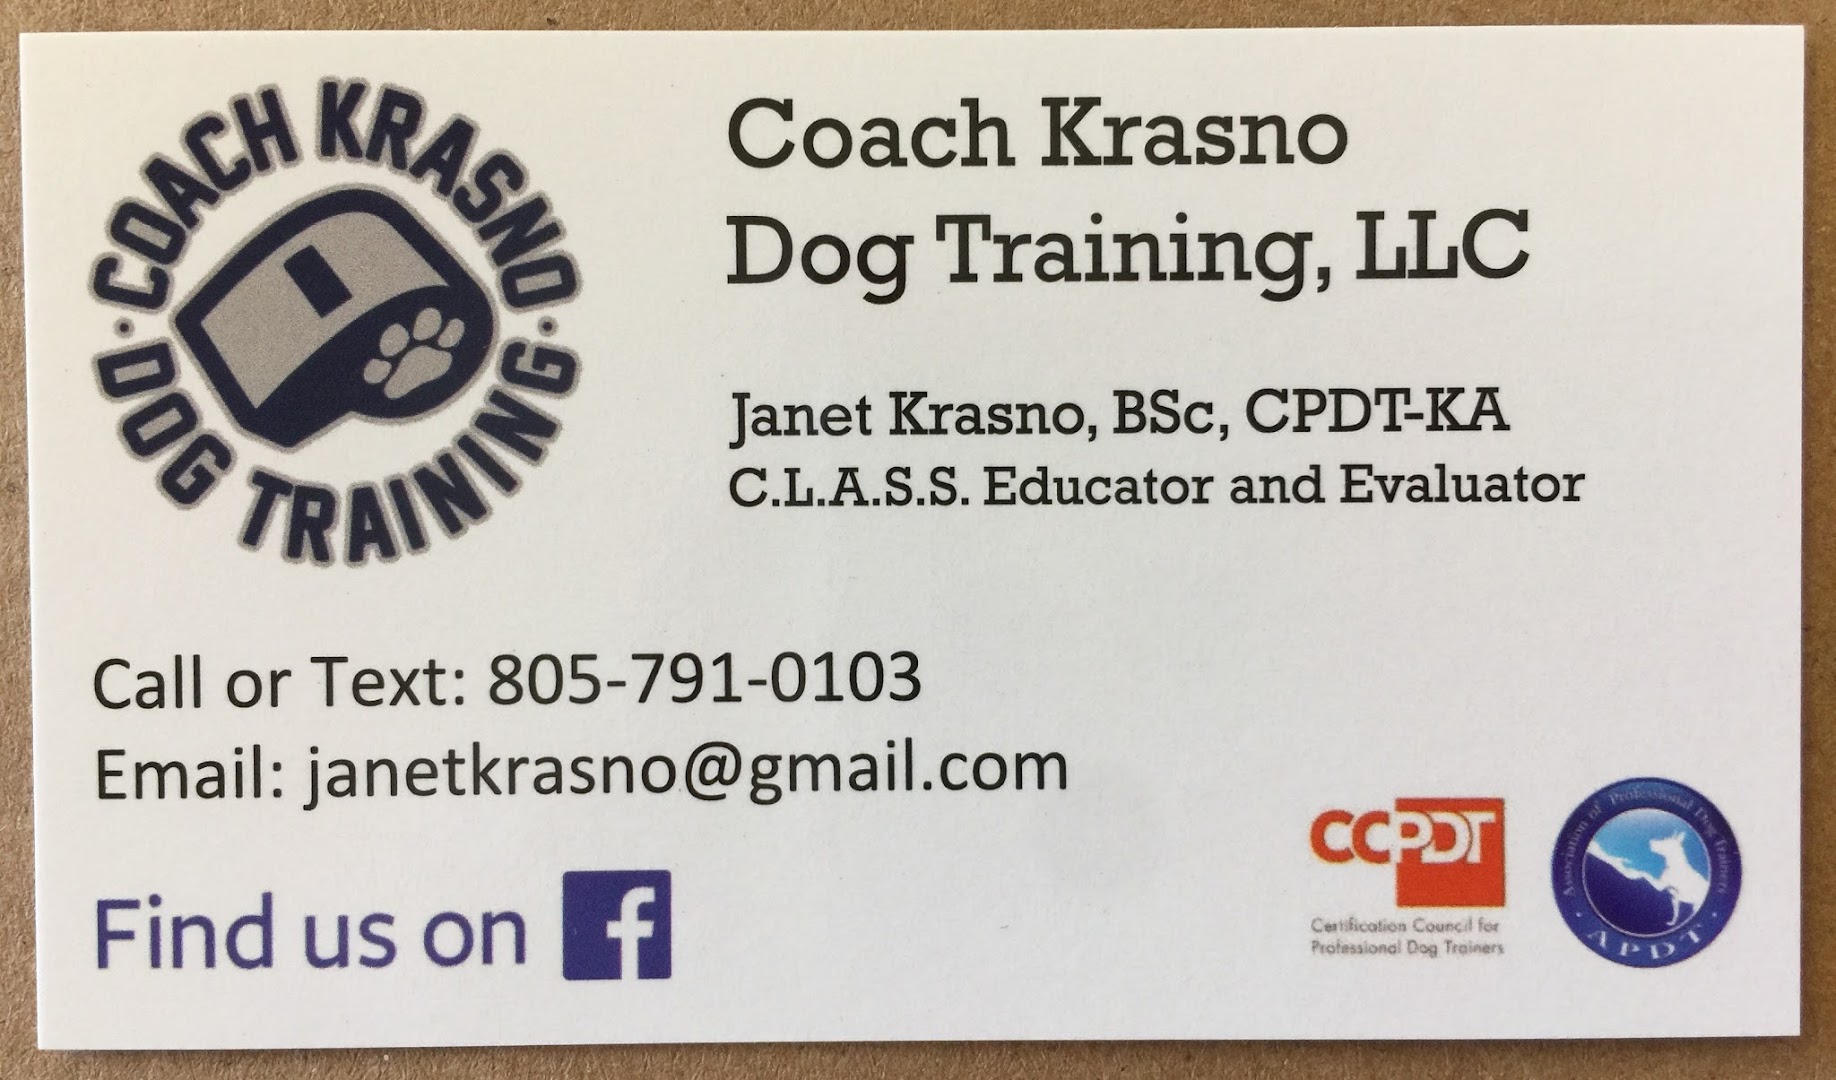 Coach Krasno Dog Training, LLC